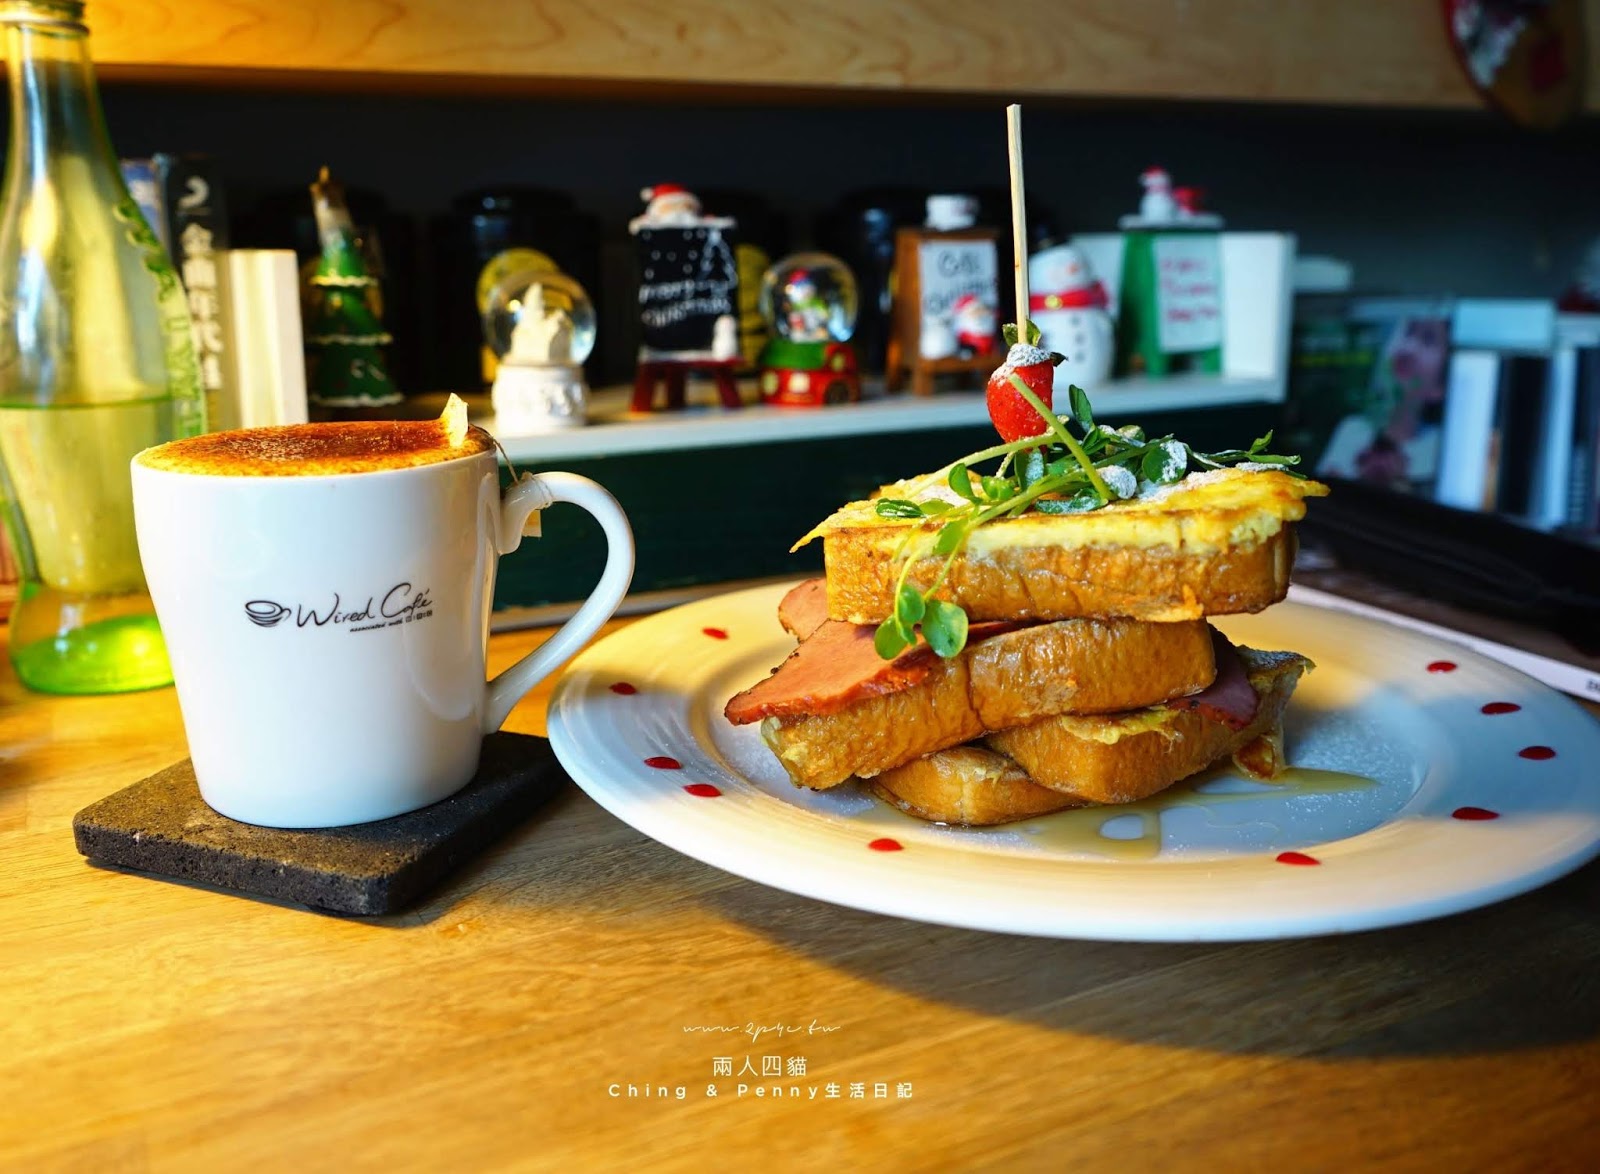 【信義區早午餐】好好文化創意 We & Me Cafe  不限時全天候早午餐